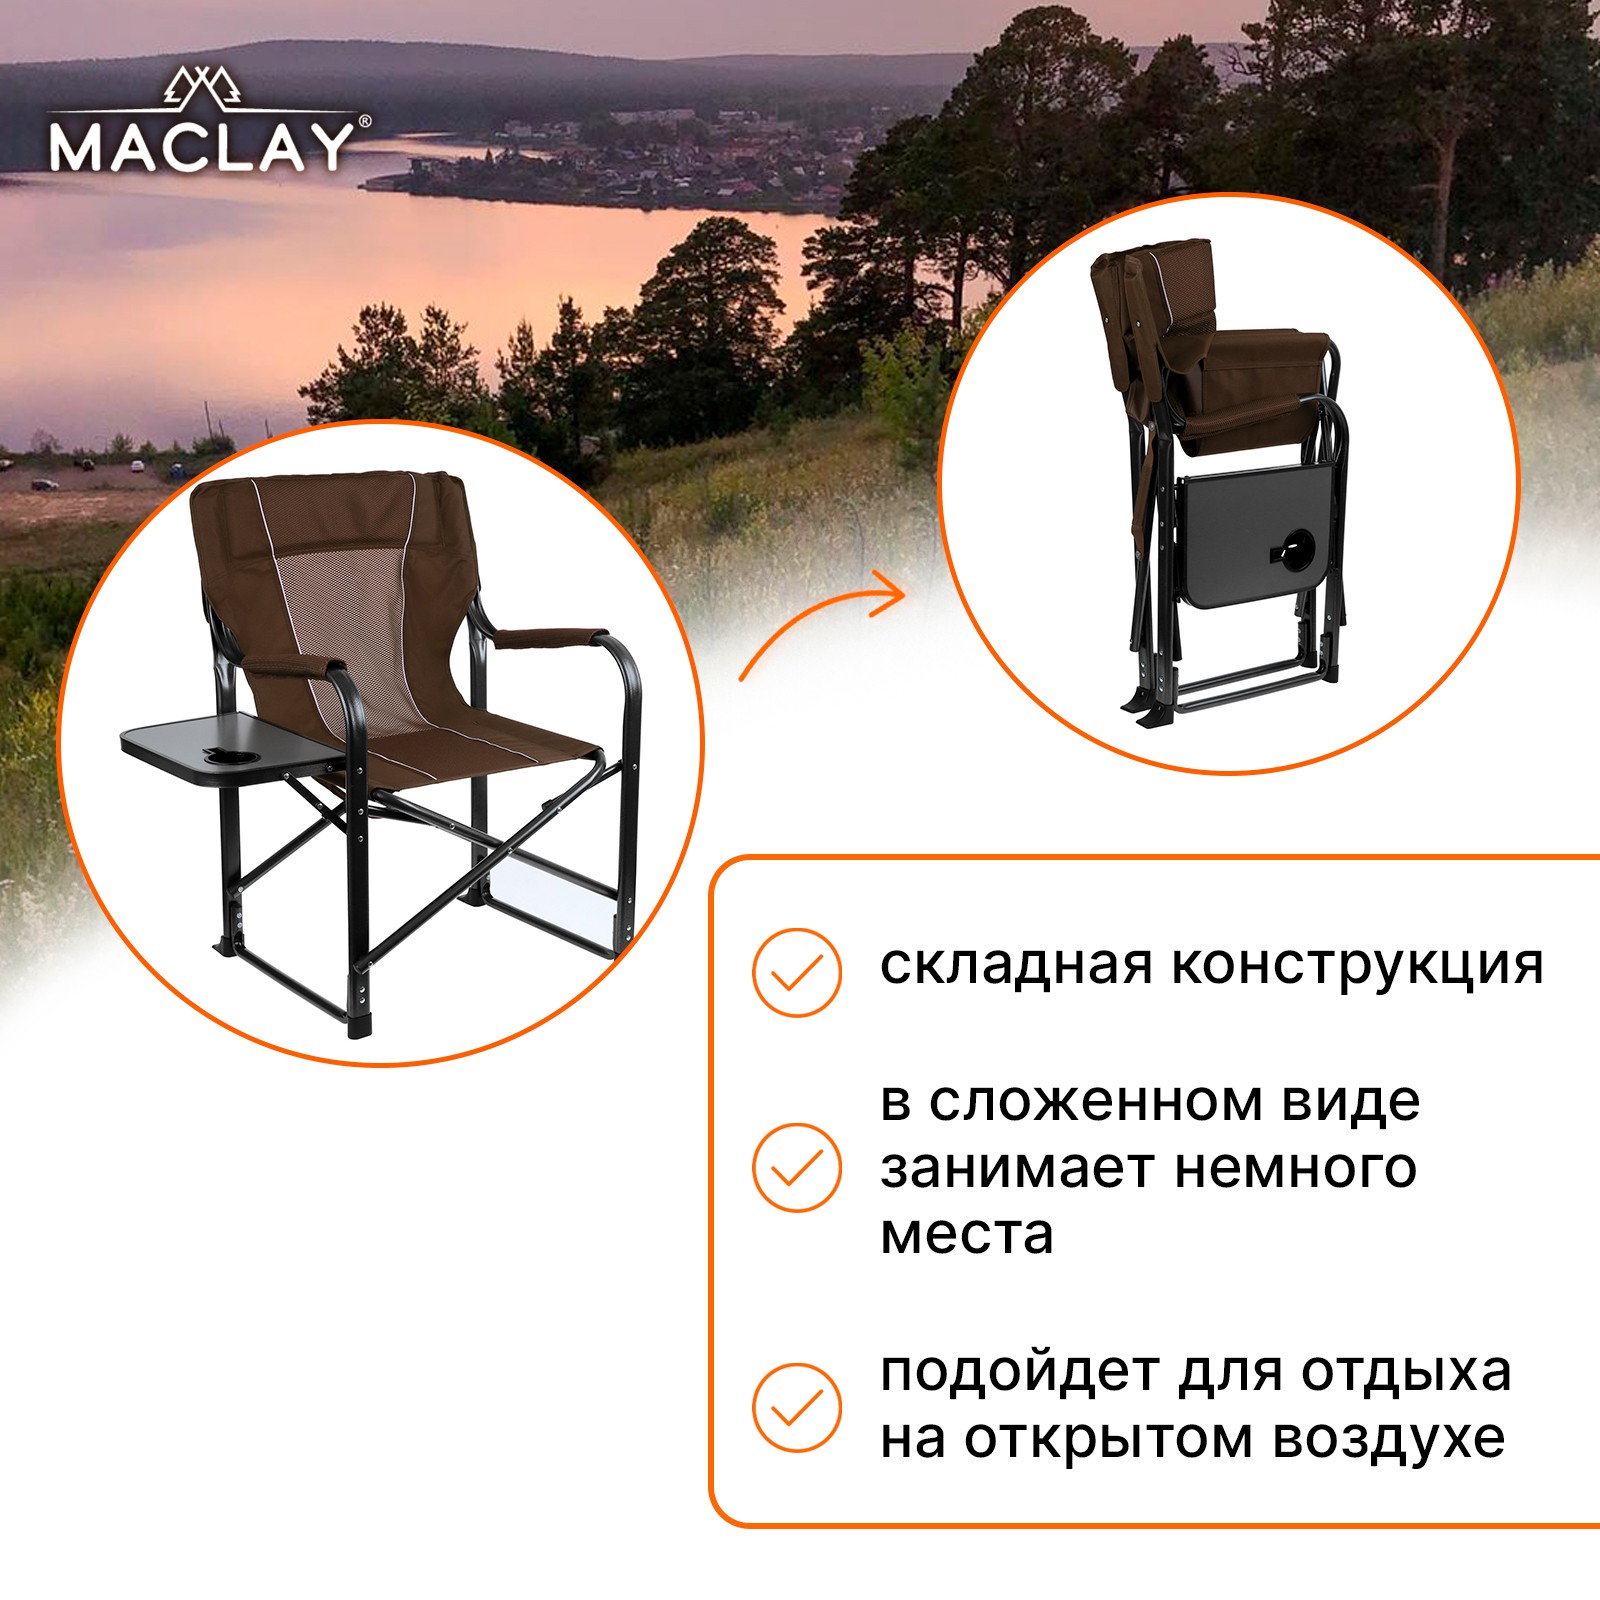 Кресло Maclay туристическое стол с подстаканником р. 63 х 47 х 94 см цвет коричневый - фото 3